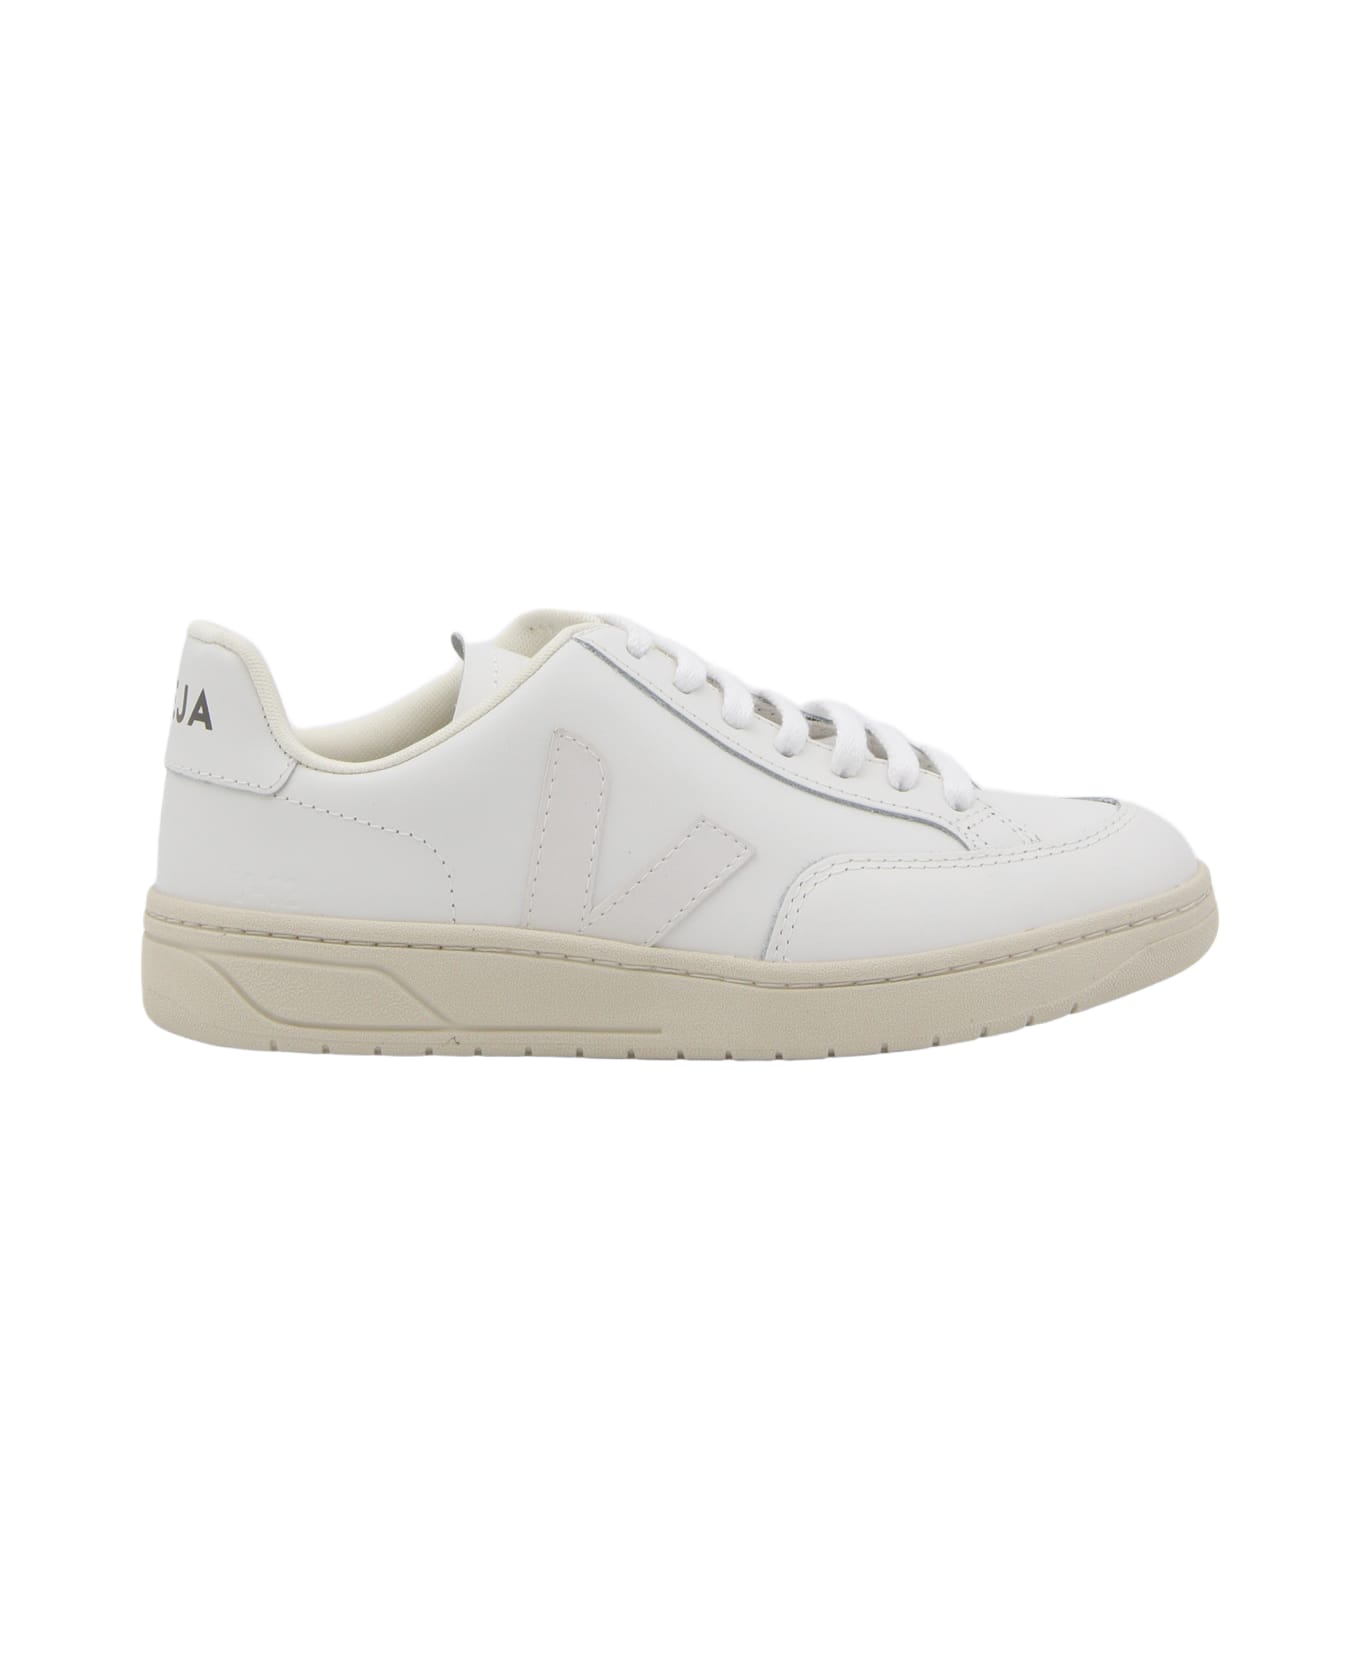 Veja White Leather V-123 Sneakers - EXTRA-WHITE